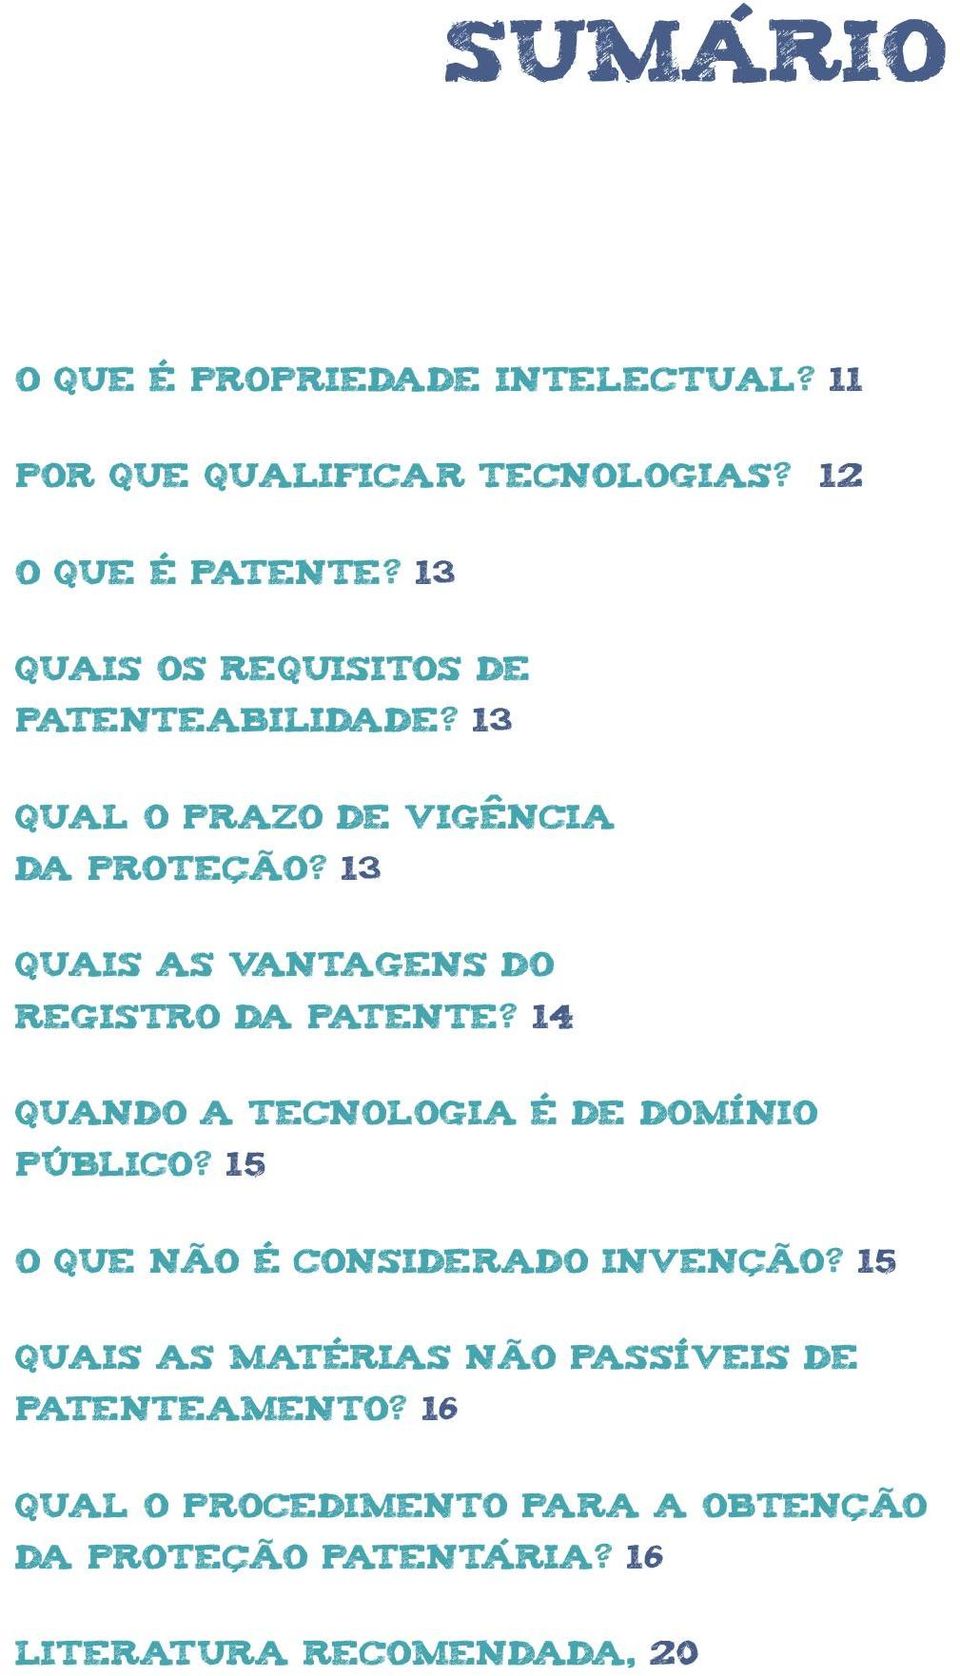 13 quais as vantagens do registro da patente? 14 quando a tecnologia é de domínio público?